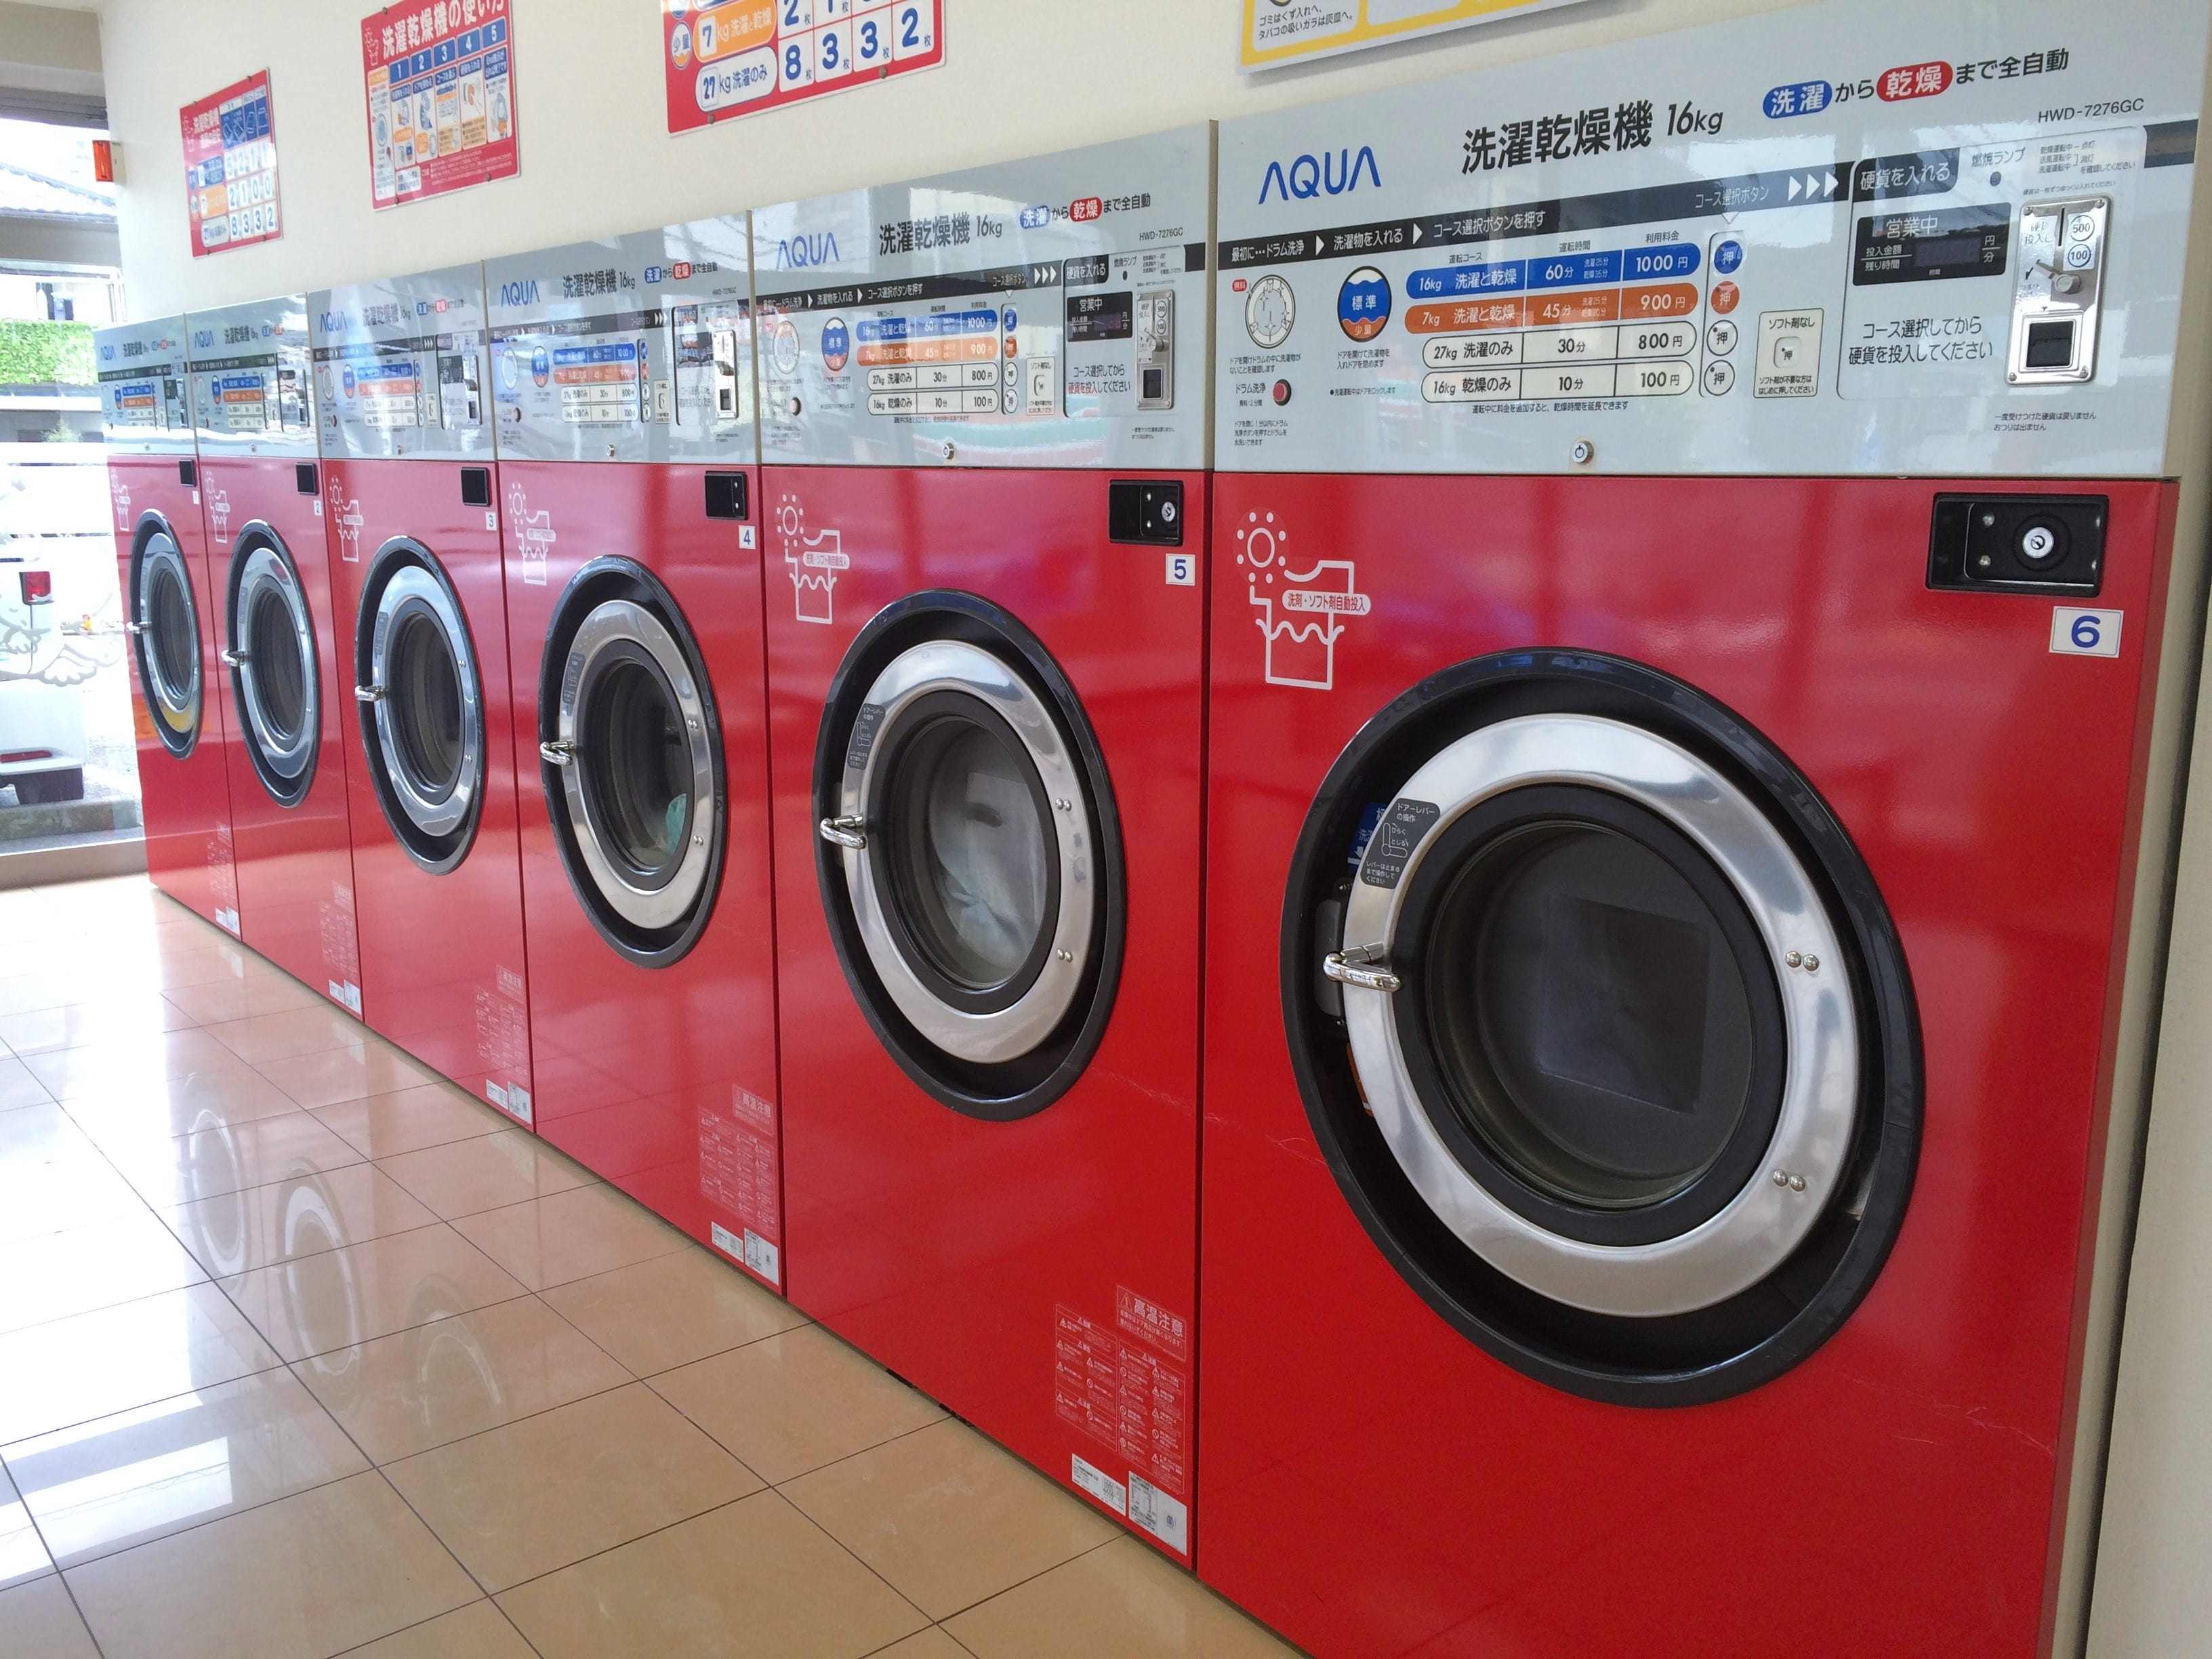 Launderette, Dryer, Washing Machine, fully automatic washing machine